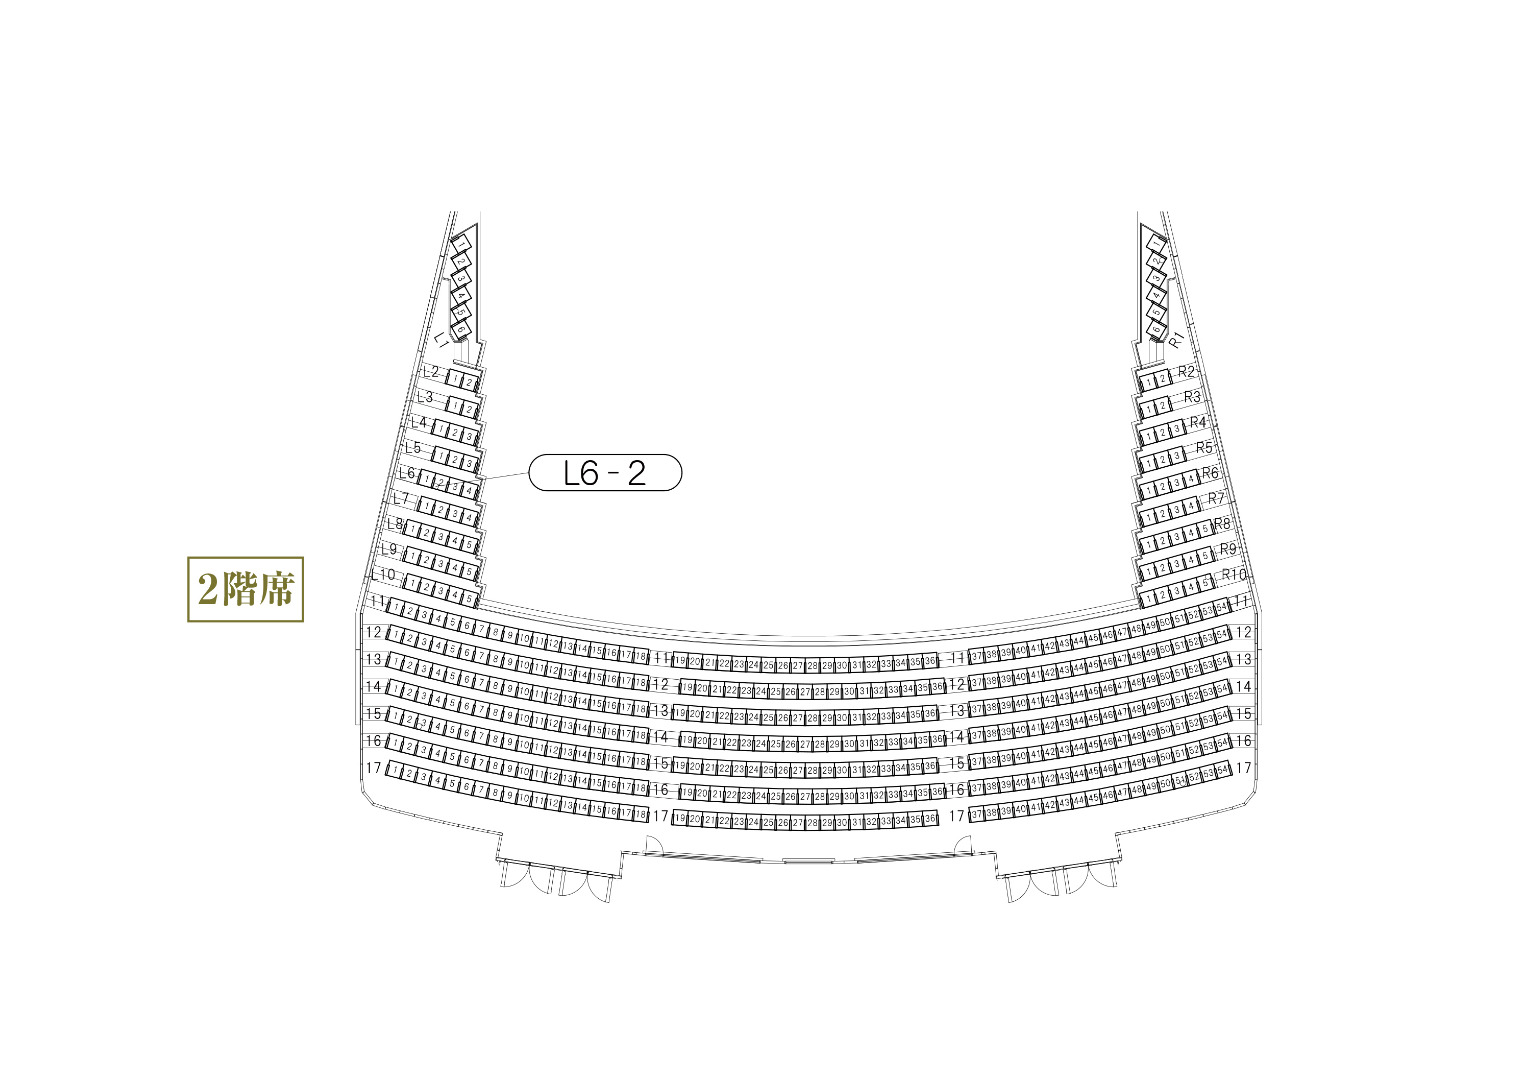 姫路市文化コンベンションセンター(アクリエひめじ)の座席表 大ホール2F